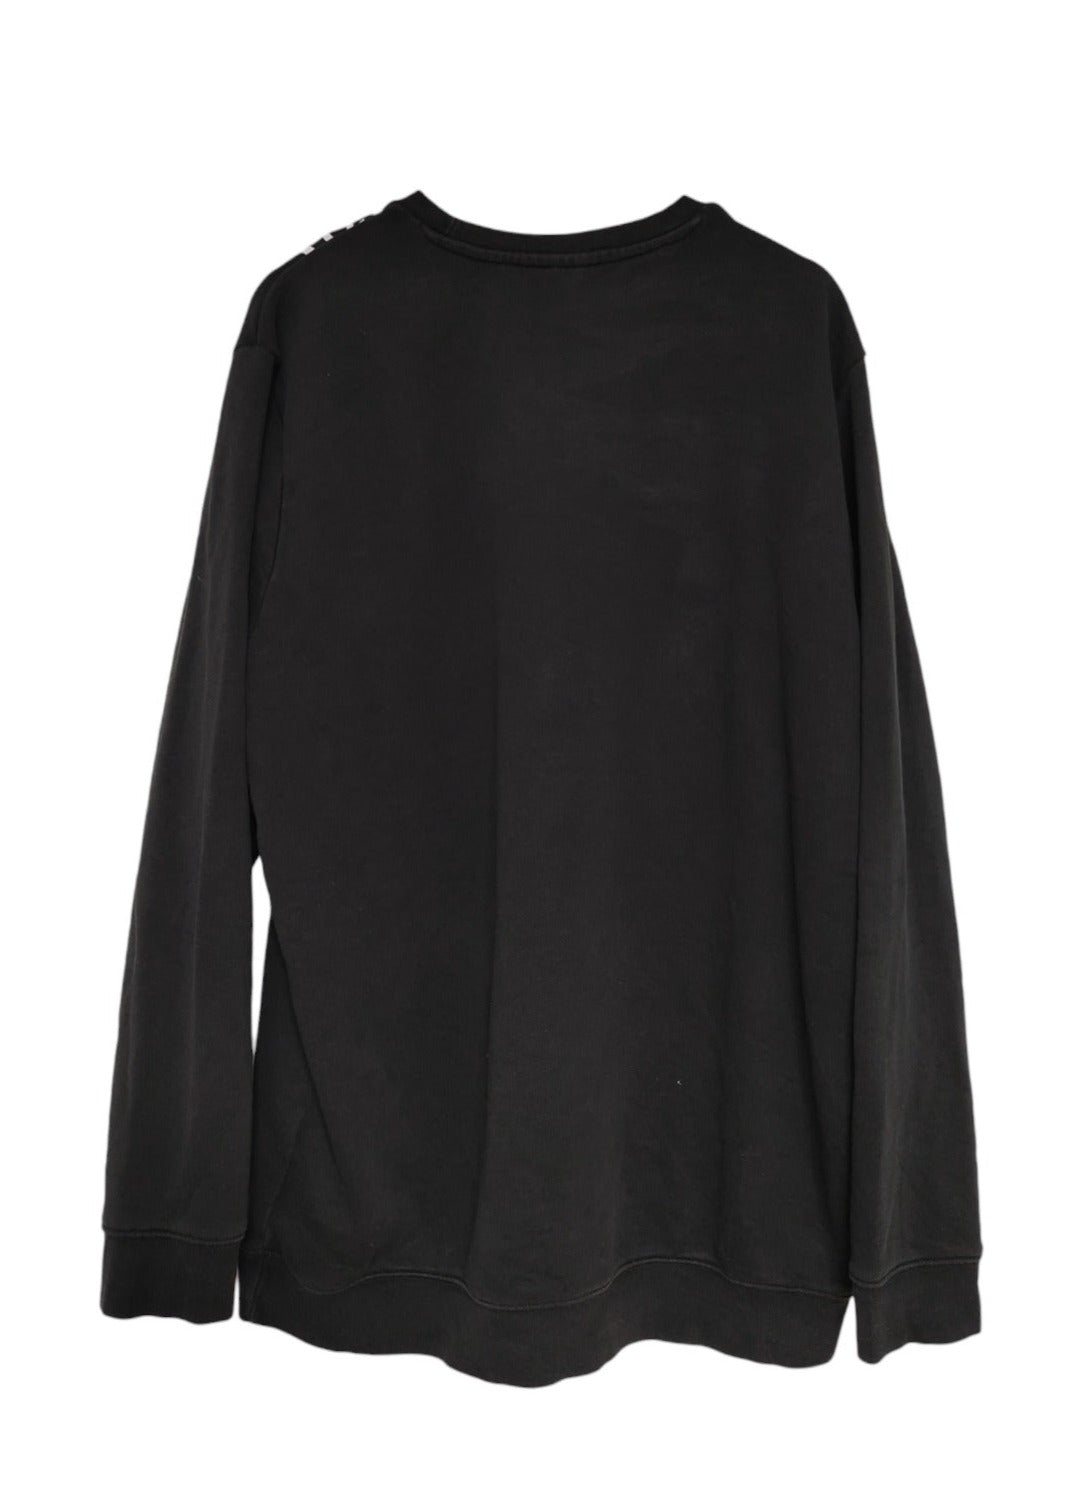 Ανδρική Φούτερ Μπλούζα ADIDAS σε Μαύρο Χρώμα (2XL)